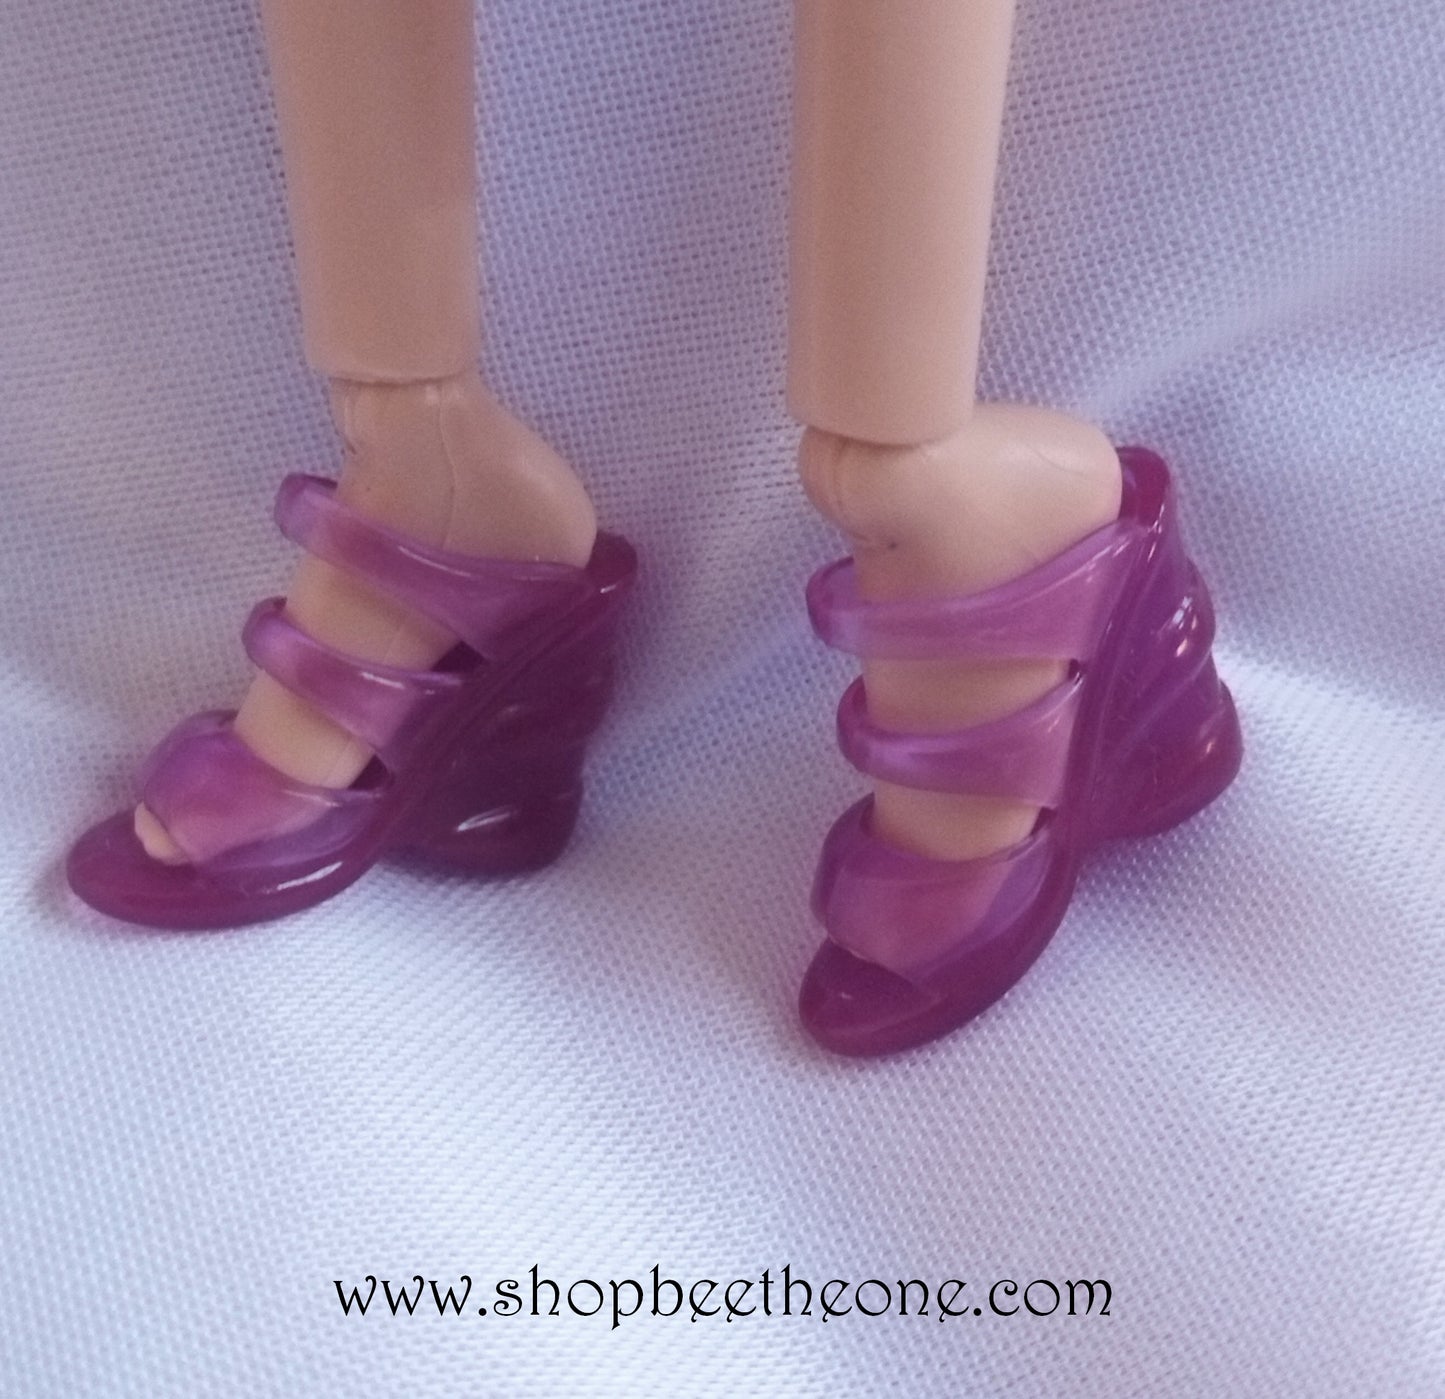 Barbie La Famille du Bonheur (Happy Family) Midge and Baby - Mattel 2003 - Chaussures - Accessoires